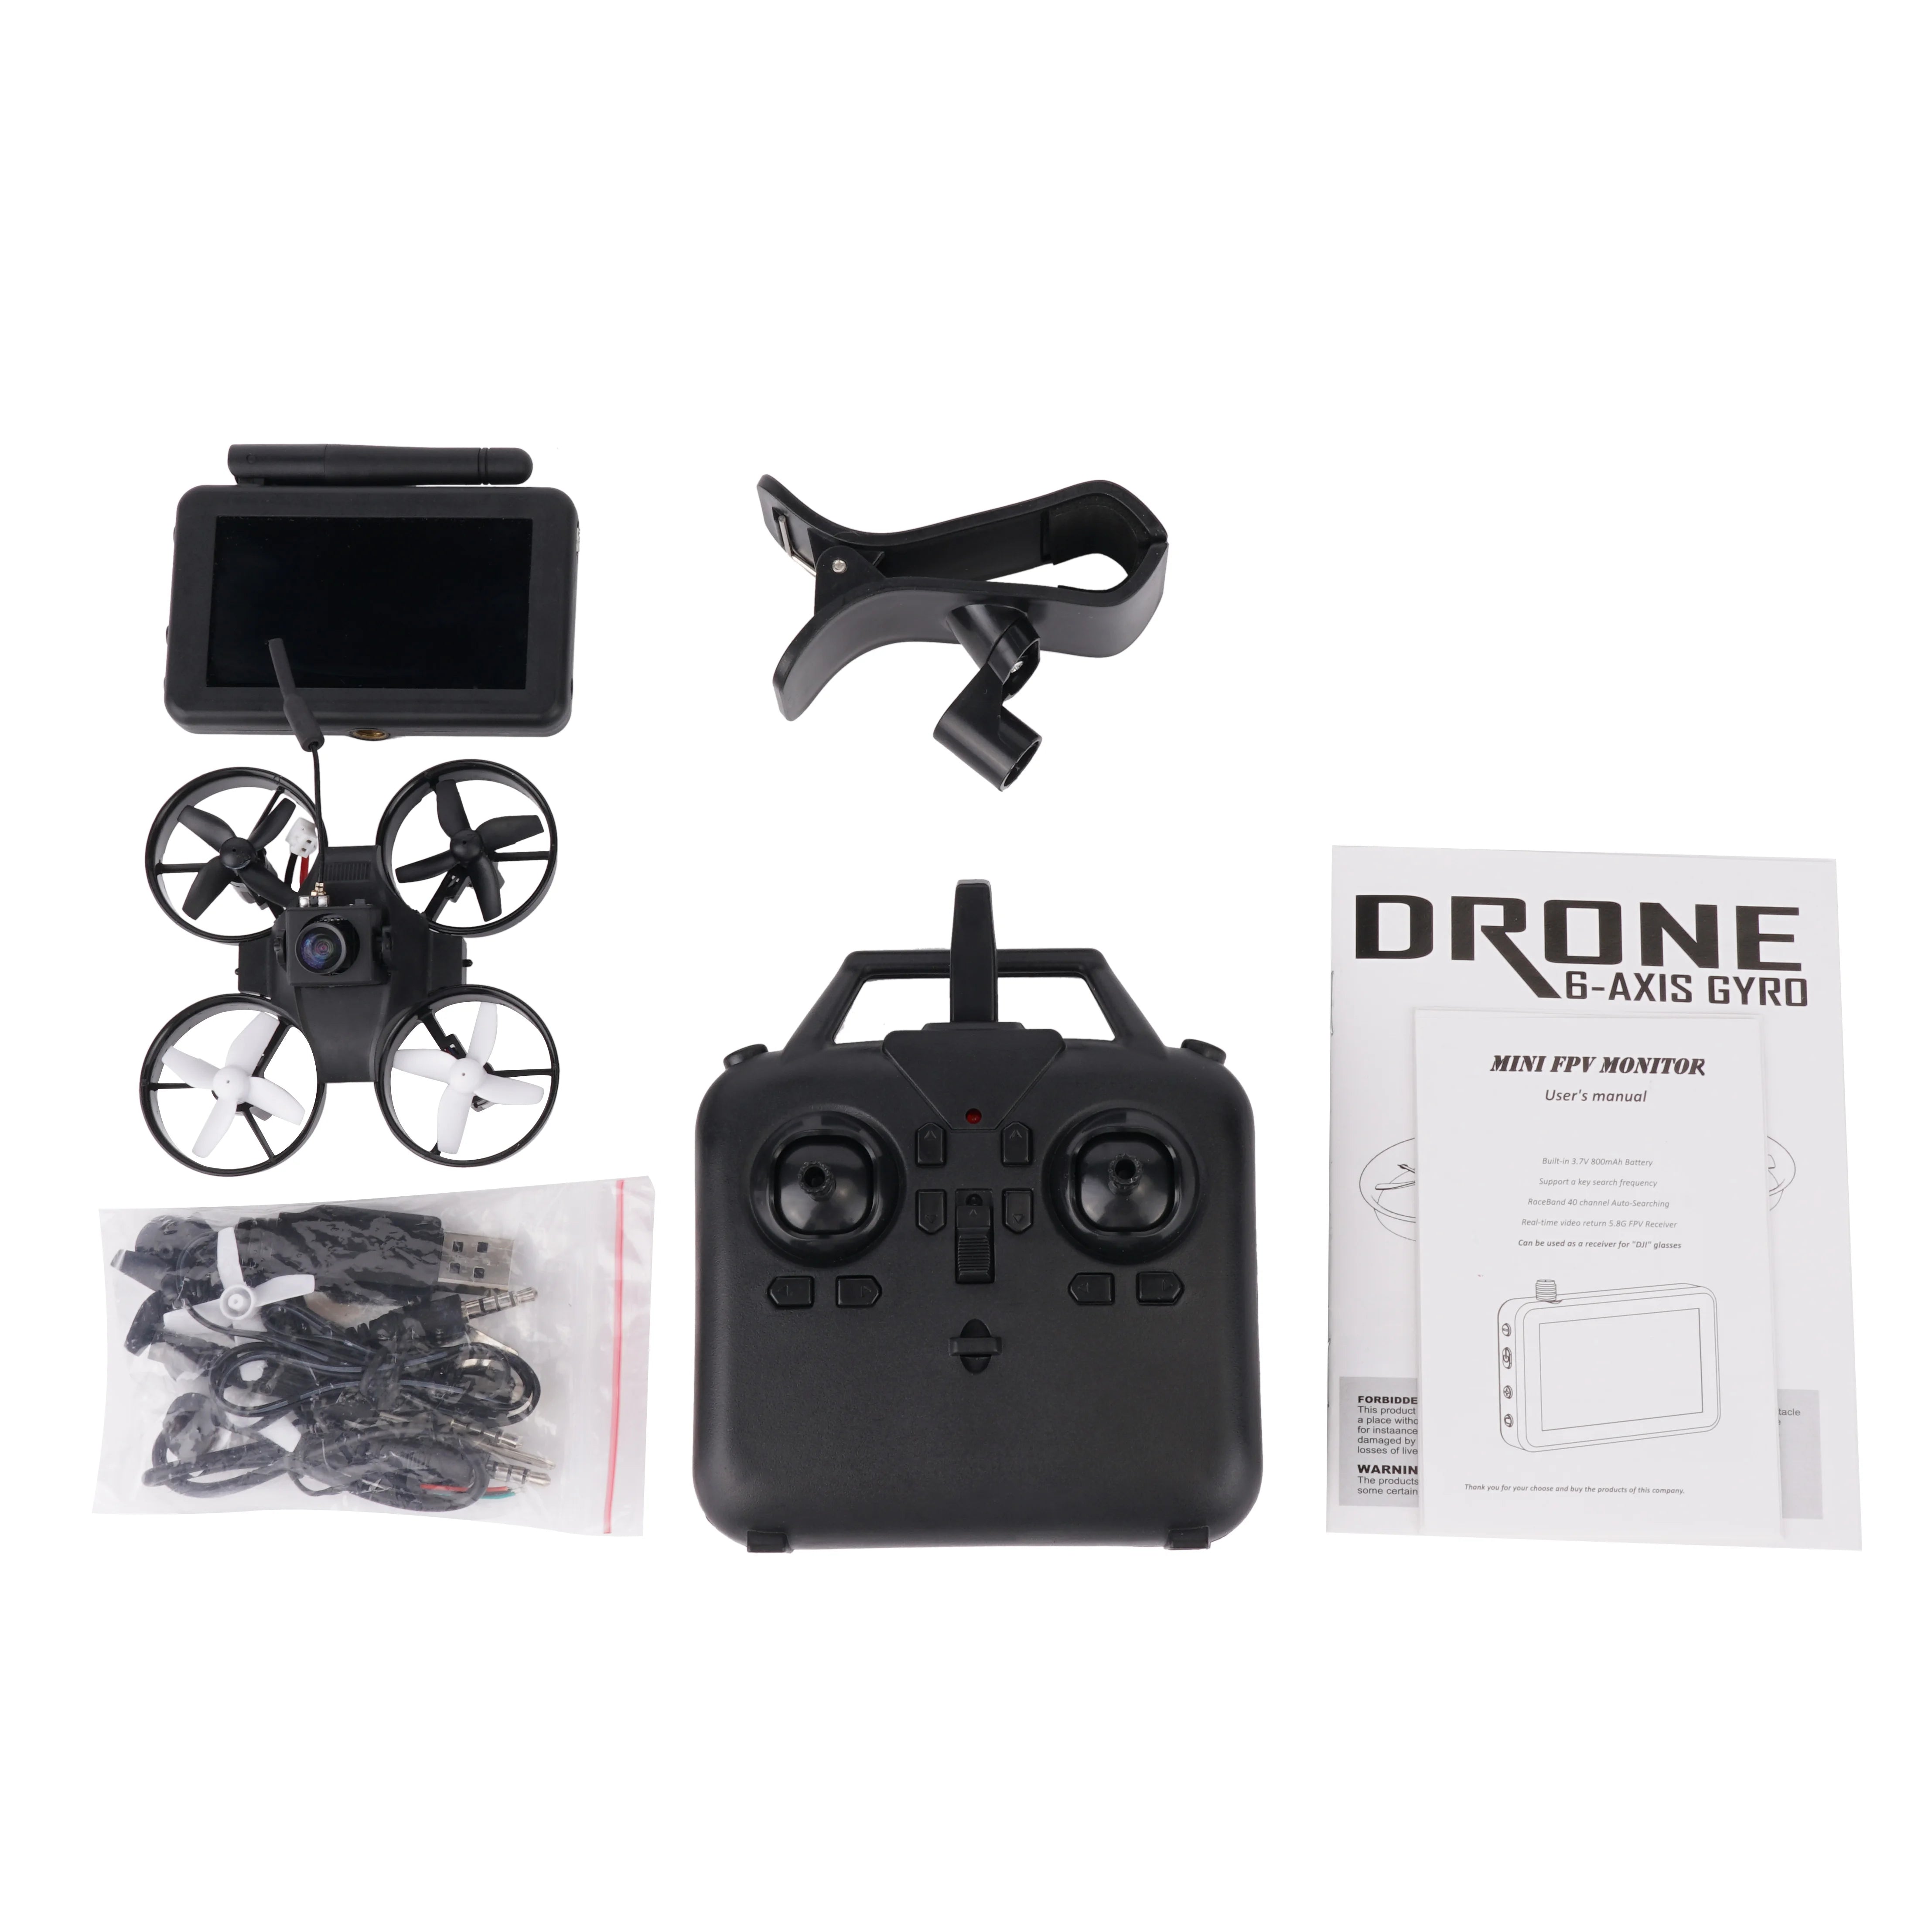 RTF Micro FPV RC Racing Drone, DRONE 6-AXIS GYRO MINI FPV MONITOR User